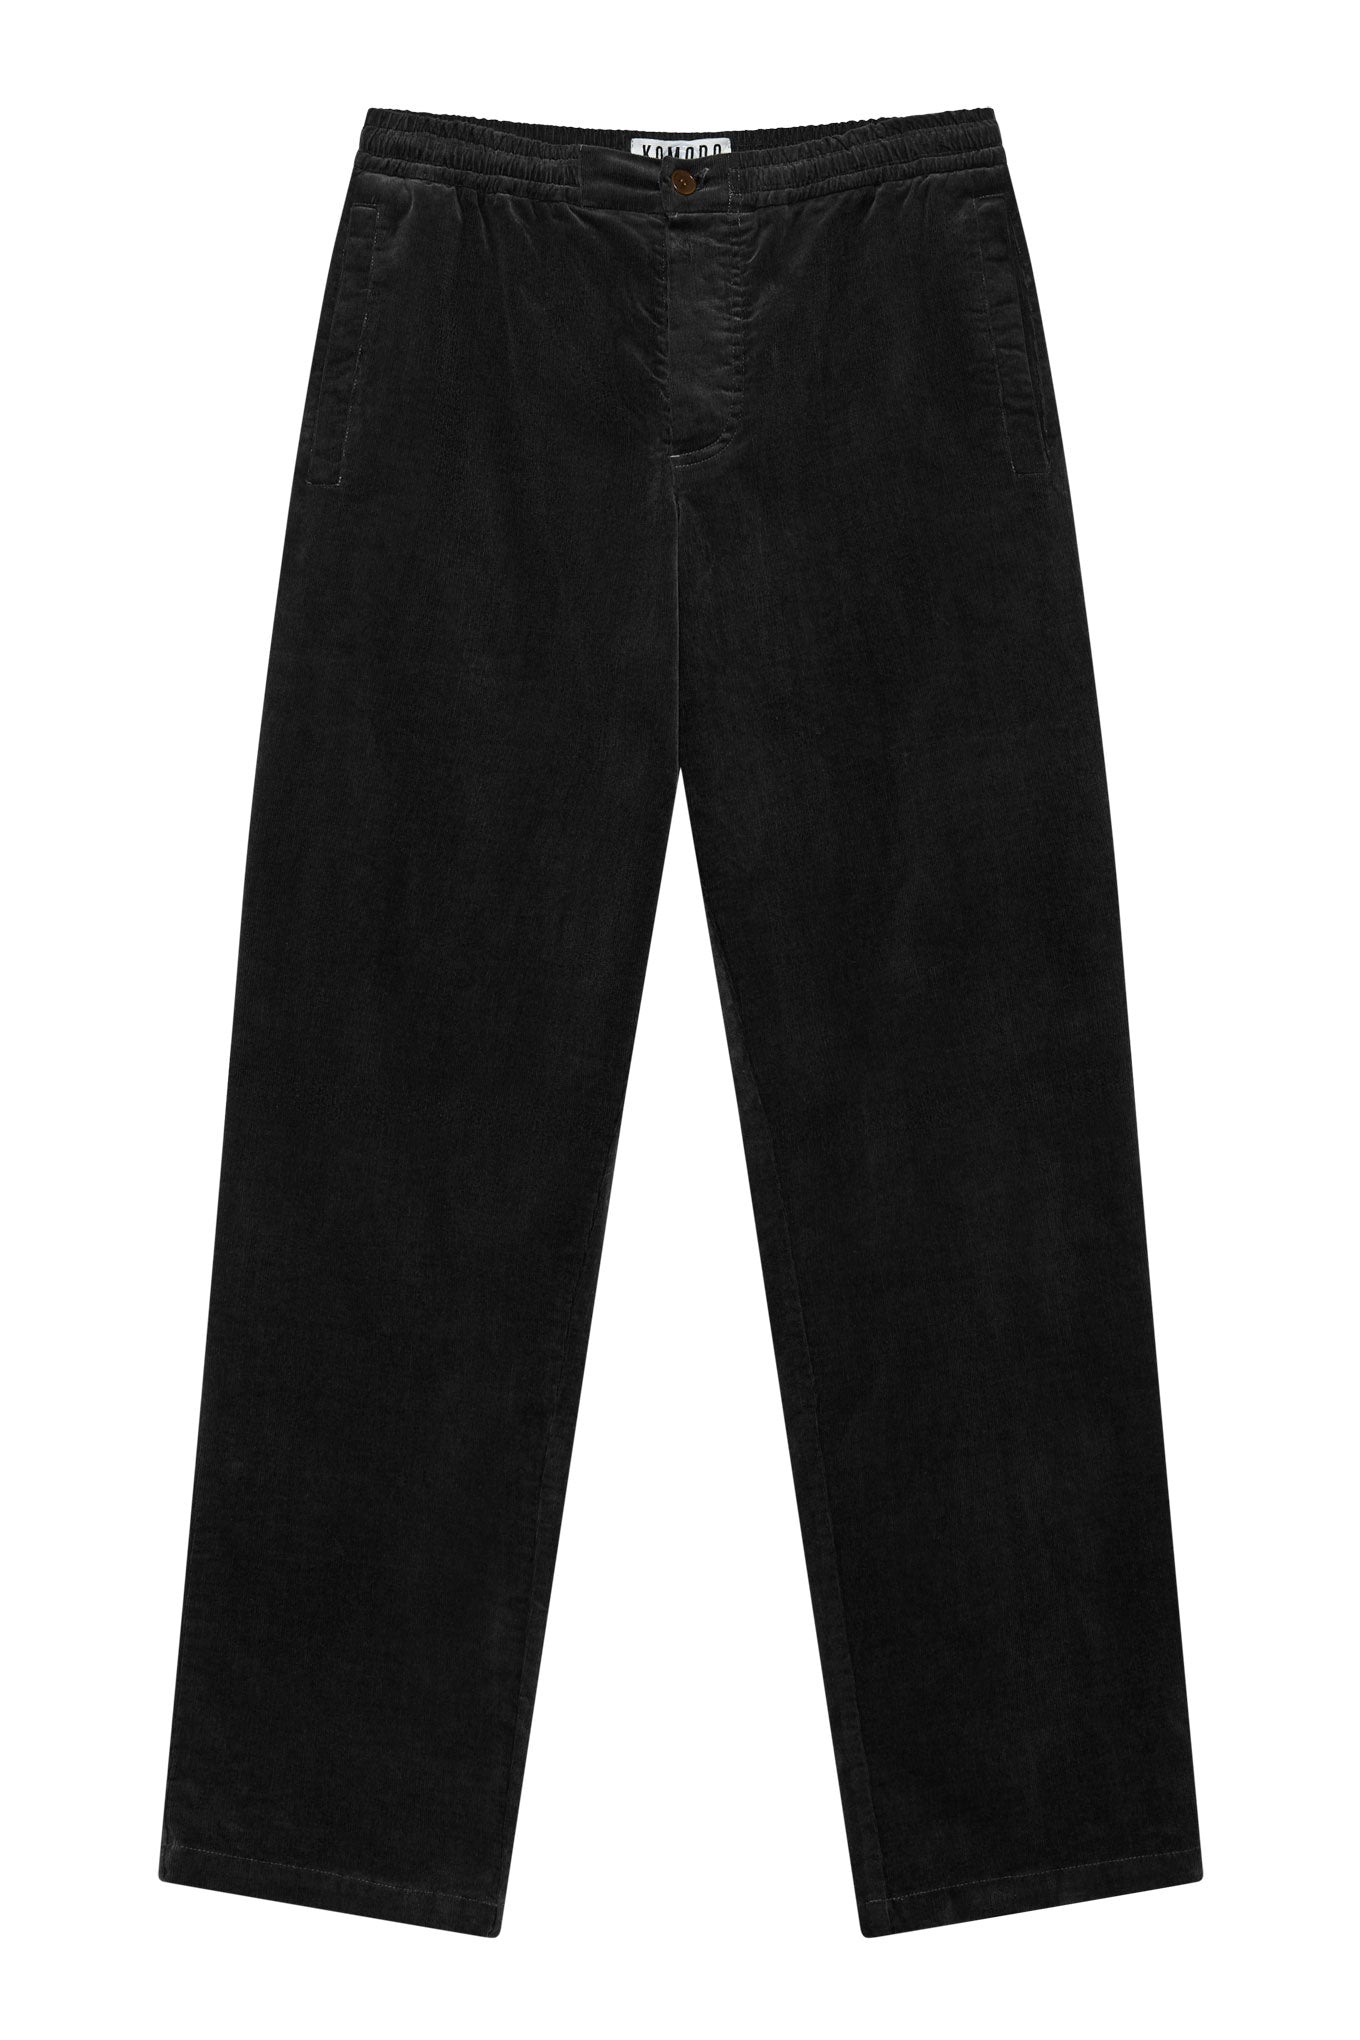 Pantalon noir en velours côtelé ANDRO en coton biologique par Komodo